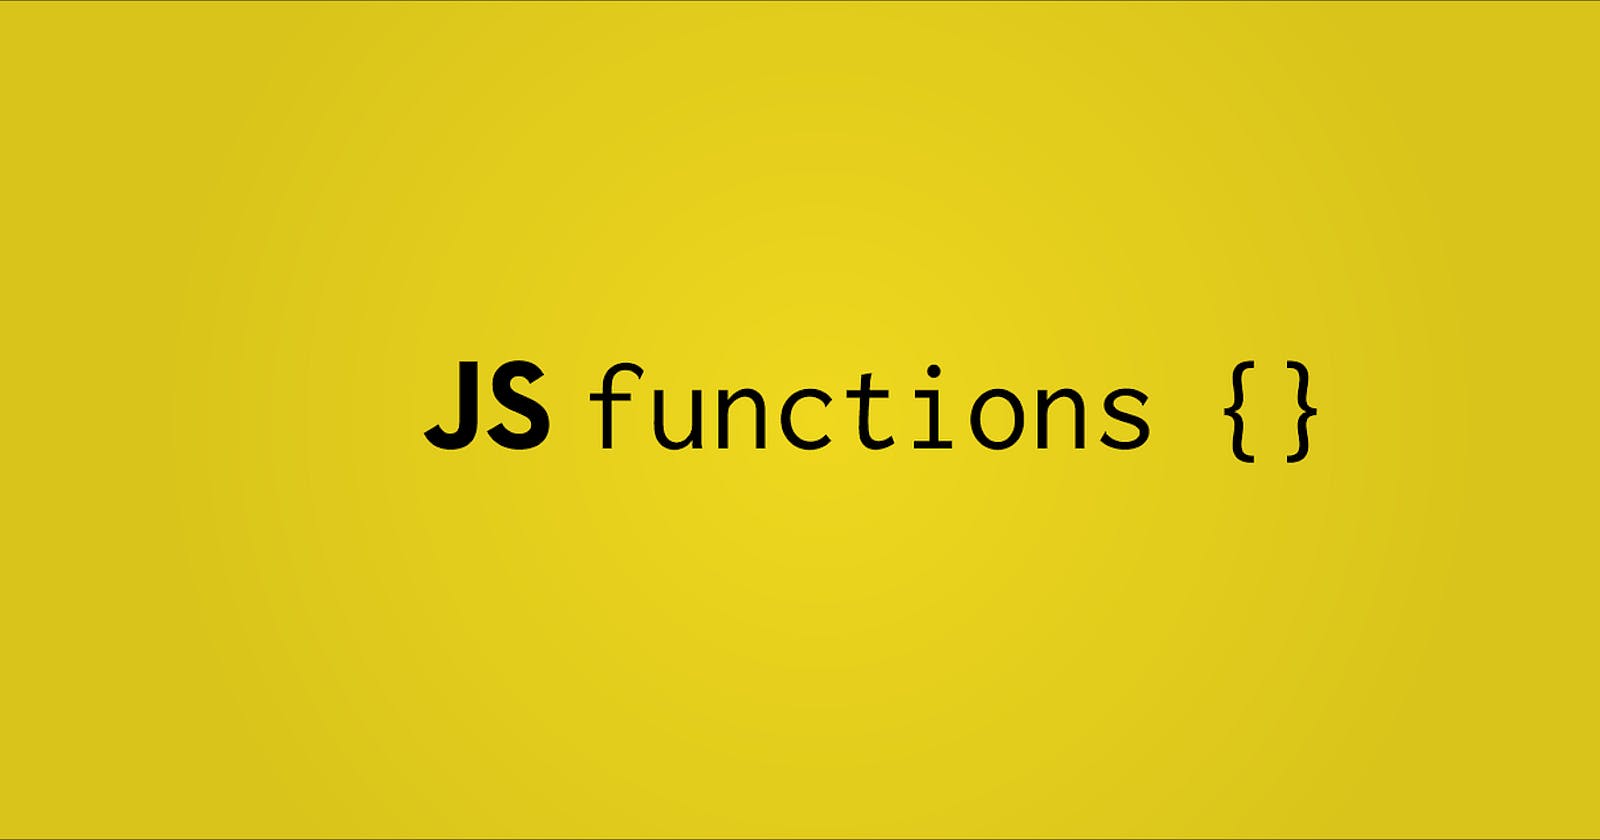 Functions in Javascript